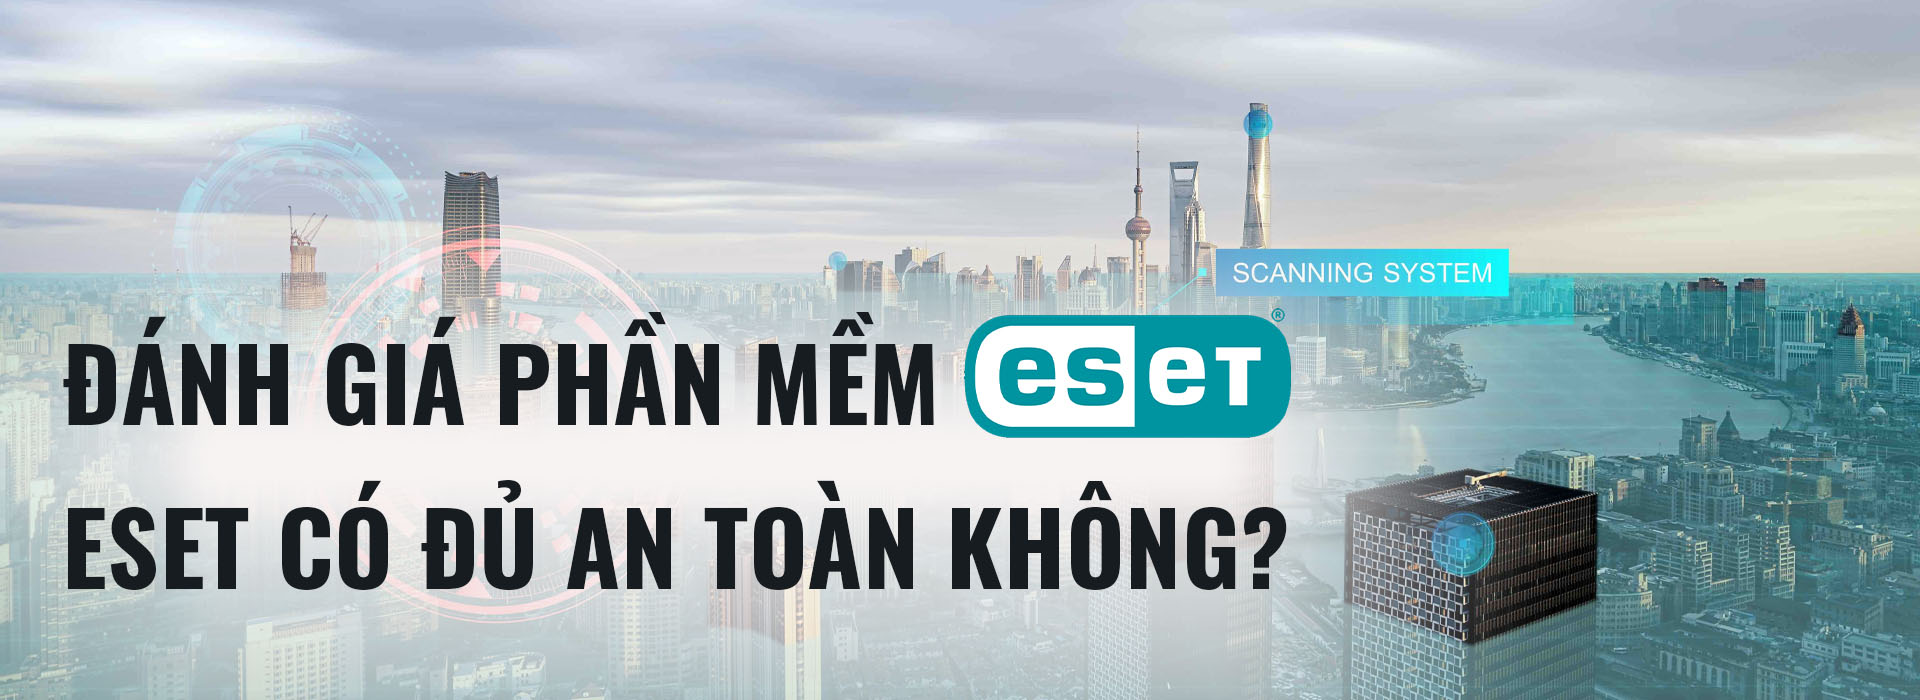 Phần mềm bảo mật ESET có xứng đáng để doanh nghiệp đầu tư?